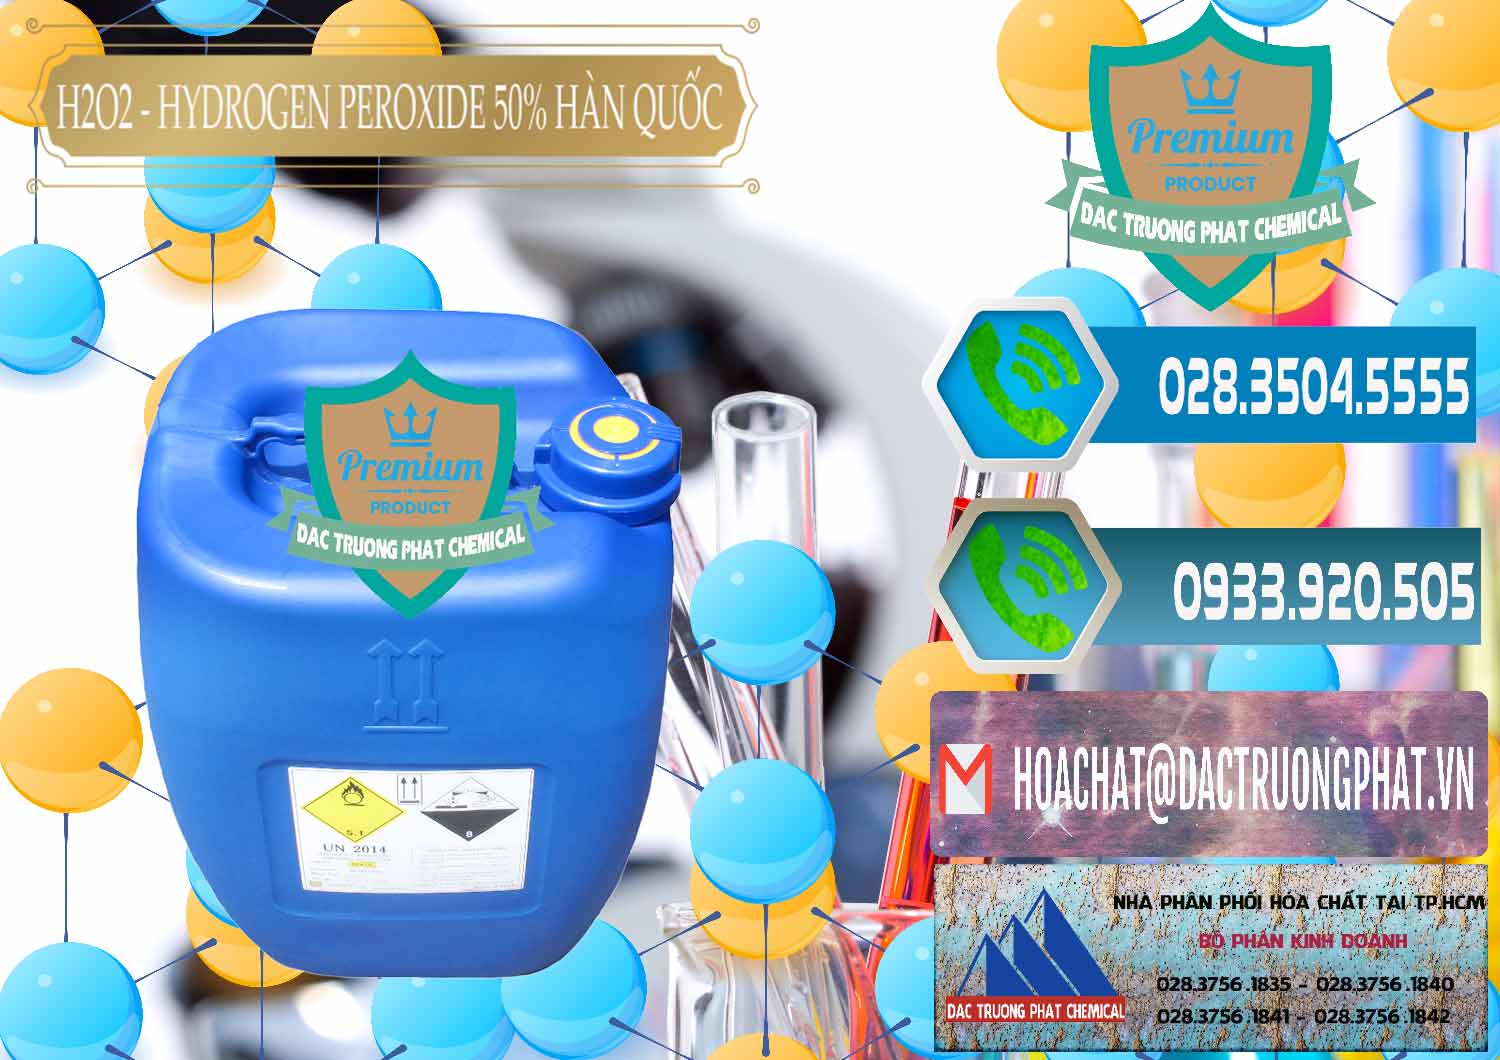 Cty chuyên bán & cung ứng H2O2 - Hydrogen Peroxide 50% Taekwang Hàn Quốc Korea - 0071 - Nơi chuyên bán ( phân phối ) hóa chất tại TP.HCM - congtyhoachat.net